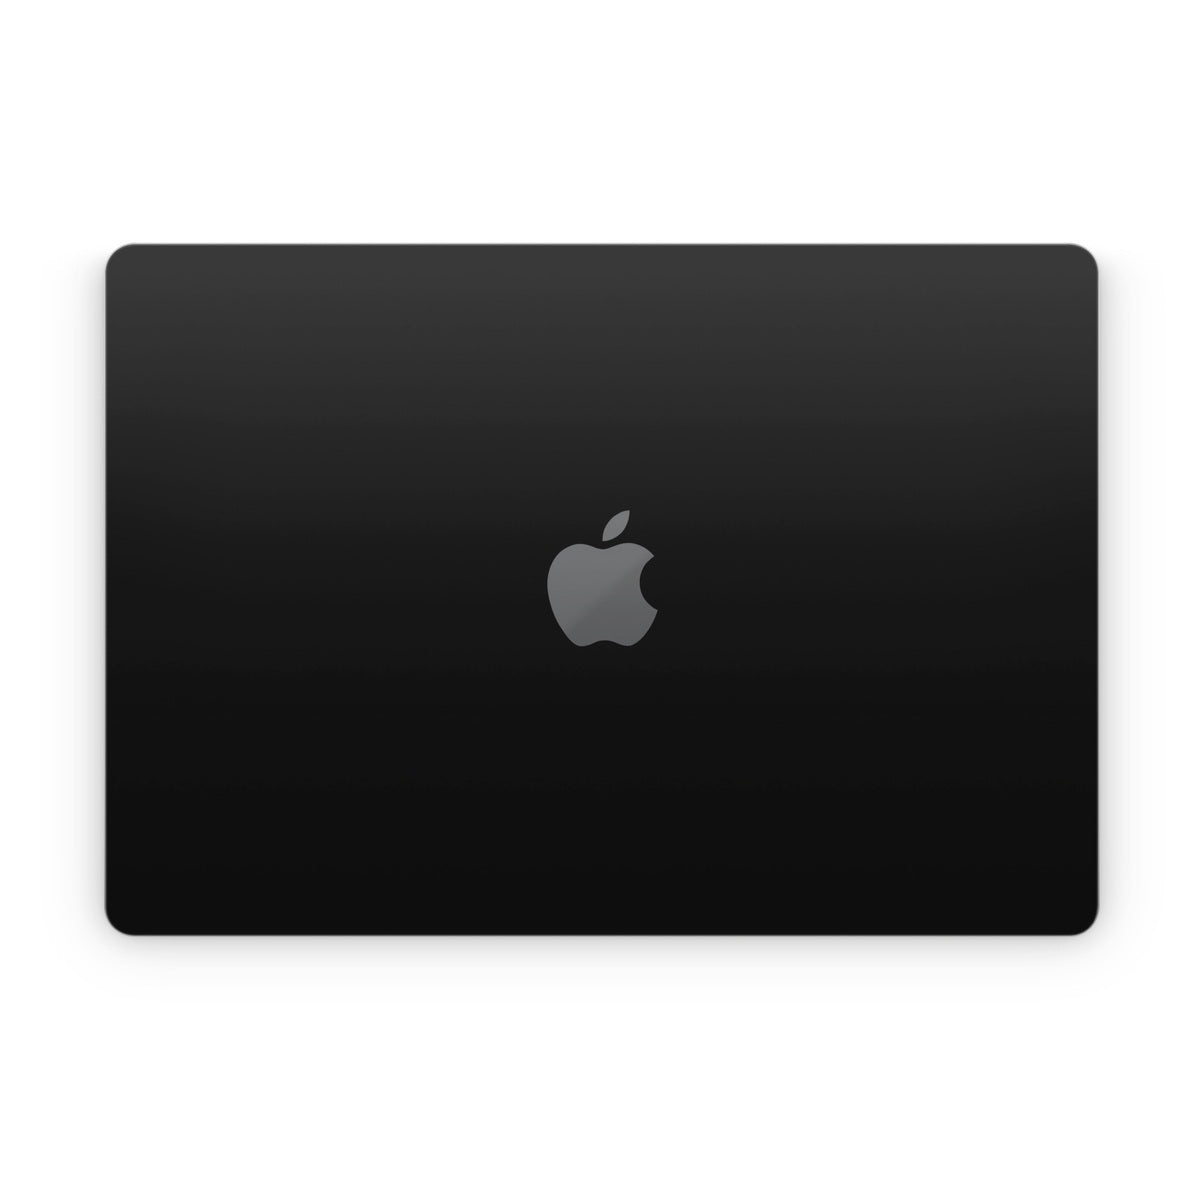 Solid State Black - Apple MacBook Skin